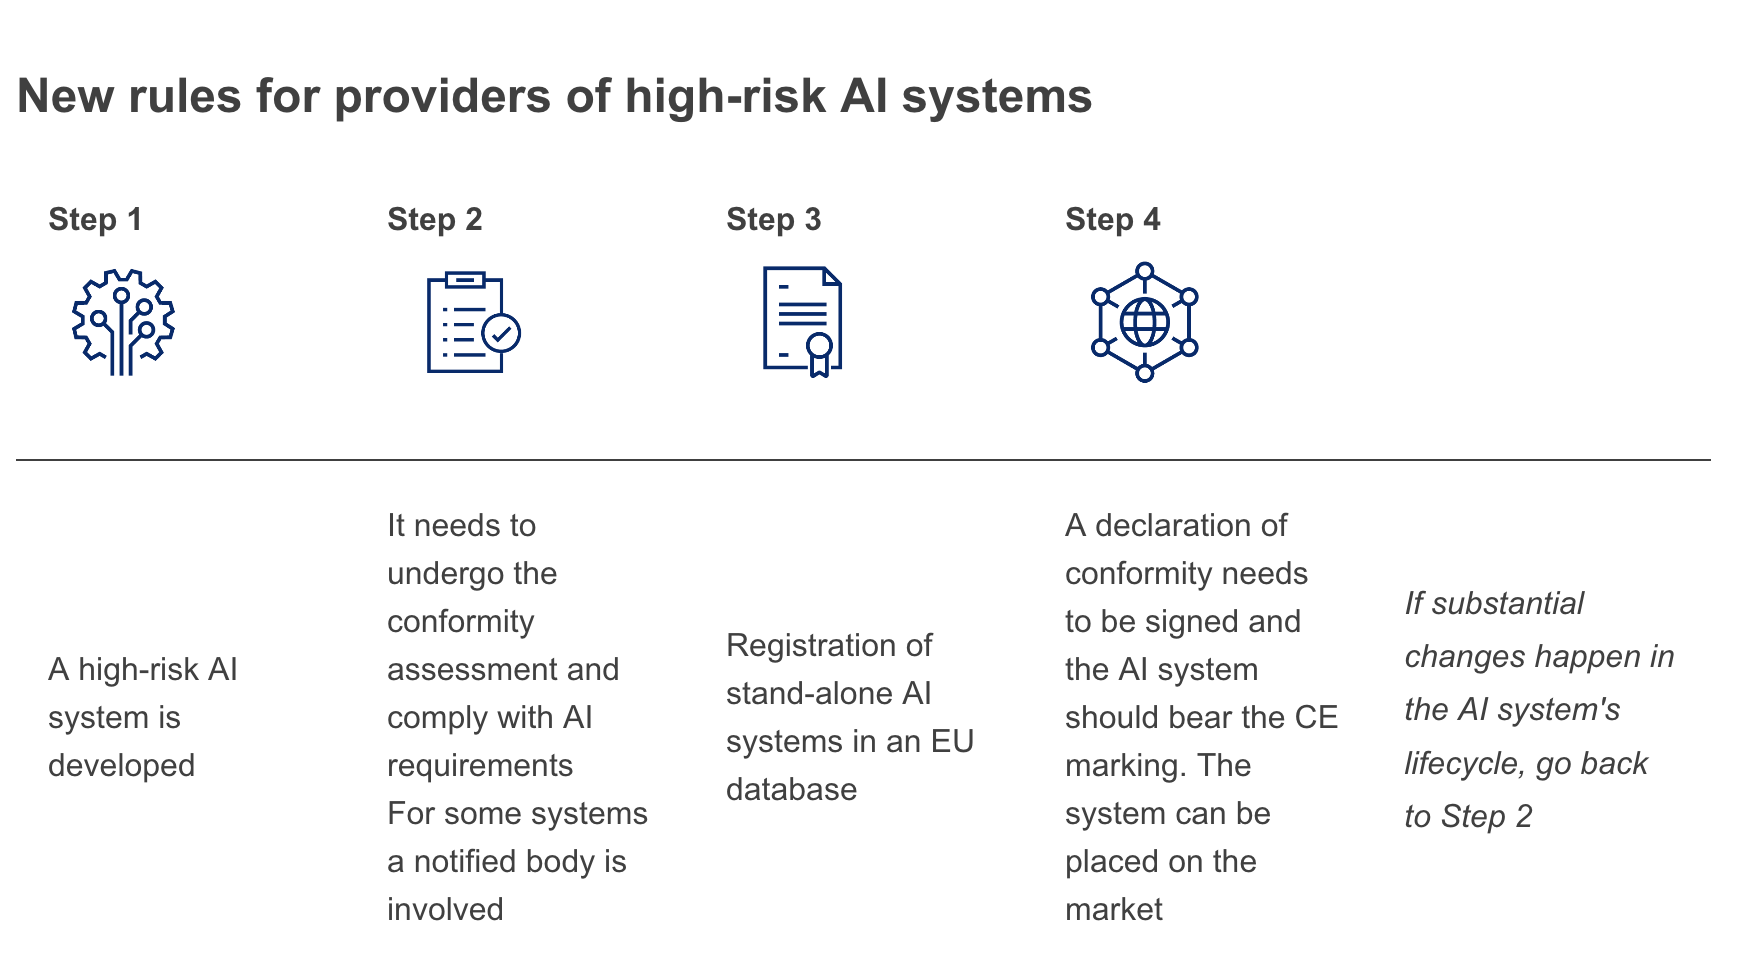 Kenniscentrum Data & Maatschappij – De Europese AI-regelgeving ...